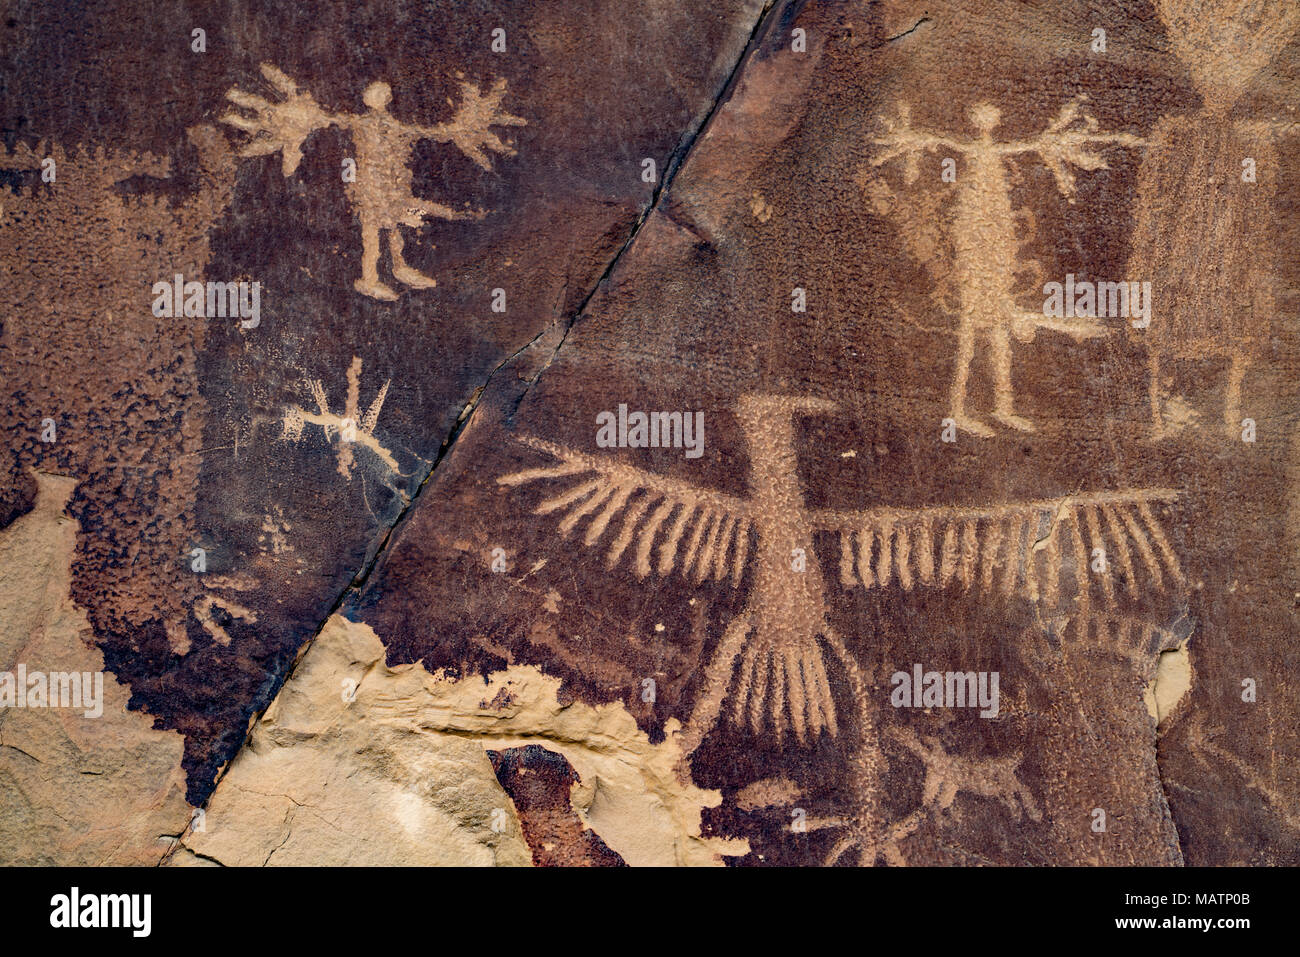 Incisioni rupestri, leggenda rock stato sito archeologico, Wyoming stile Dinwoody antica arte rock Foto Stock